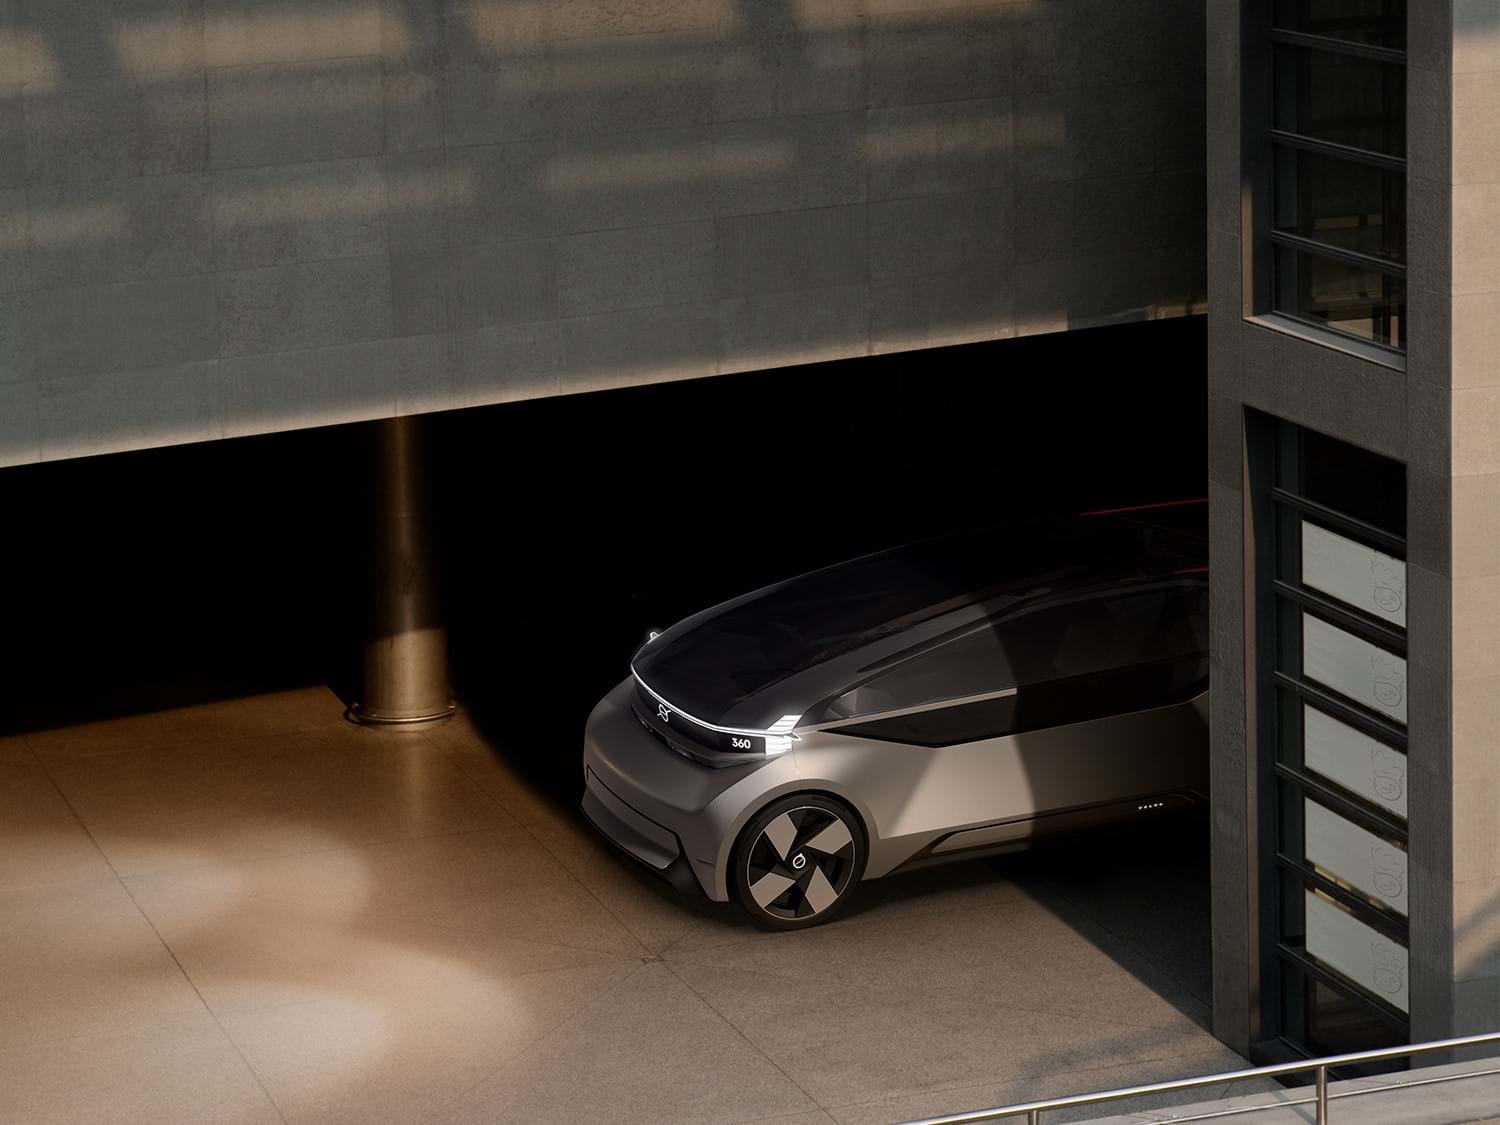 Volvo 360c driving in a parking garage.